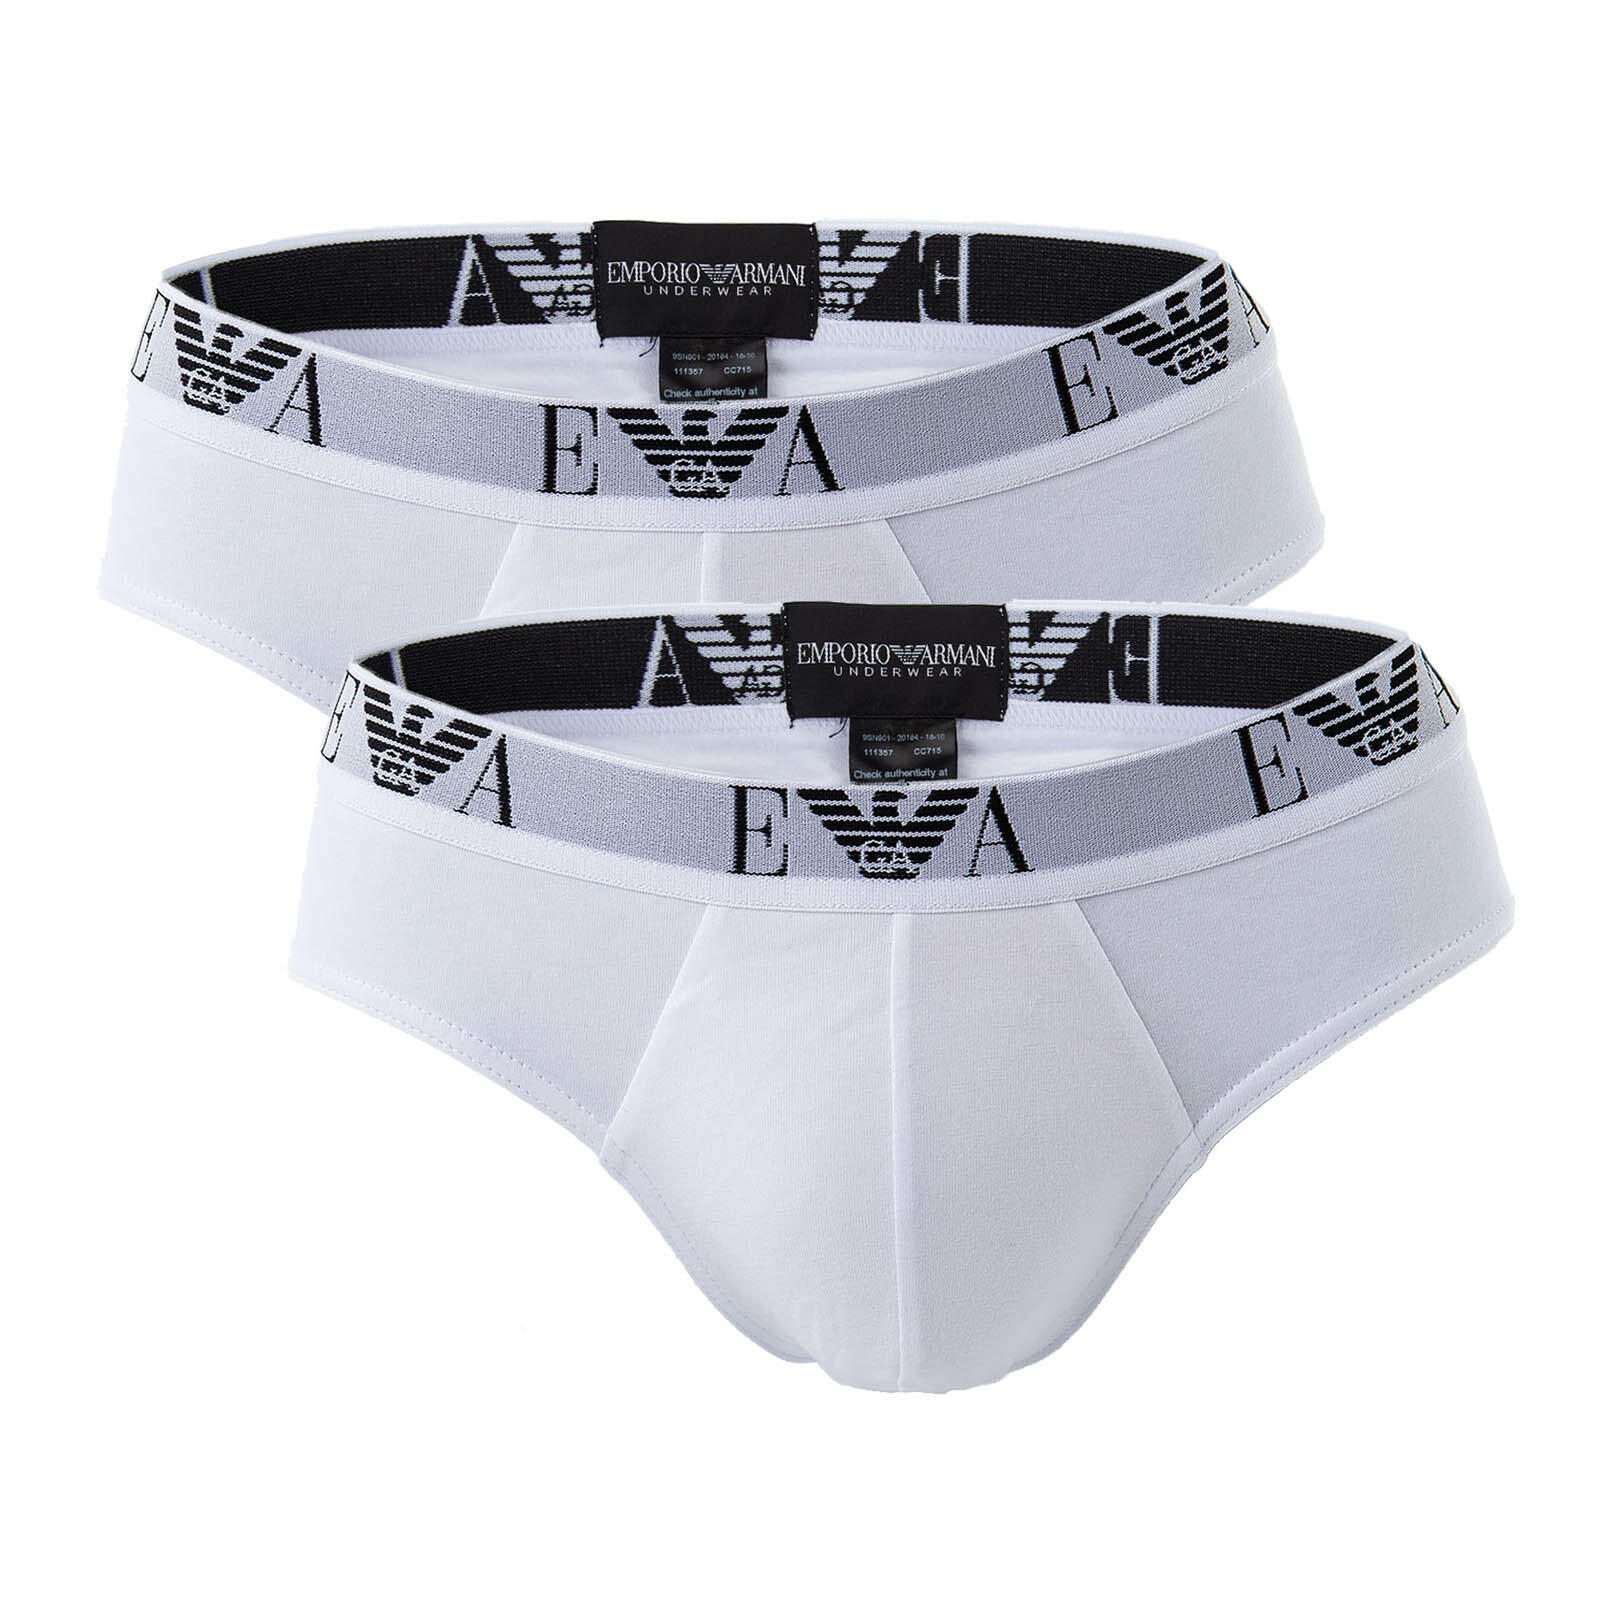 Emporio Armani Herren Slips - Unterwäsche in Weiß 